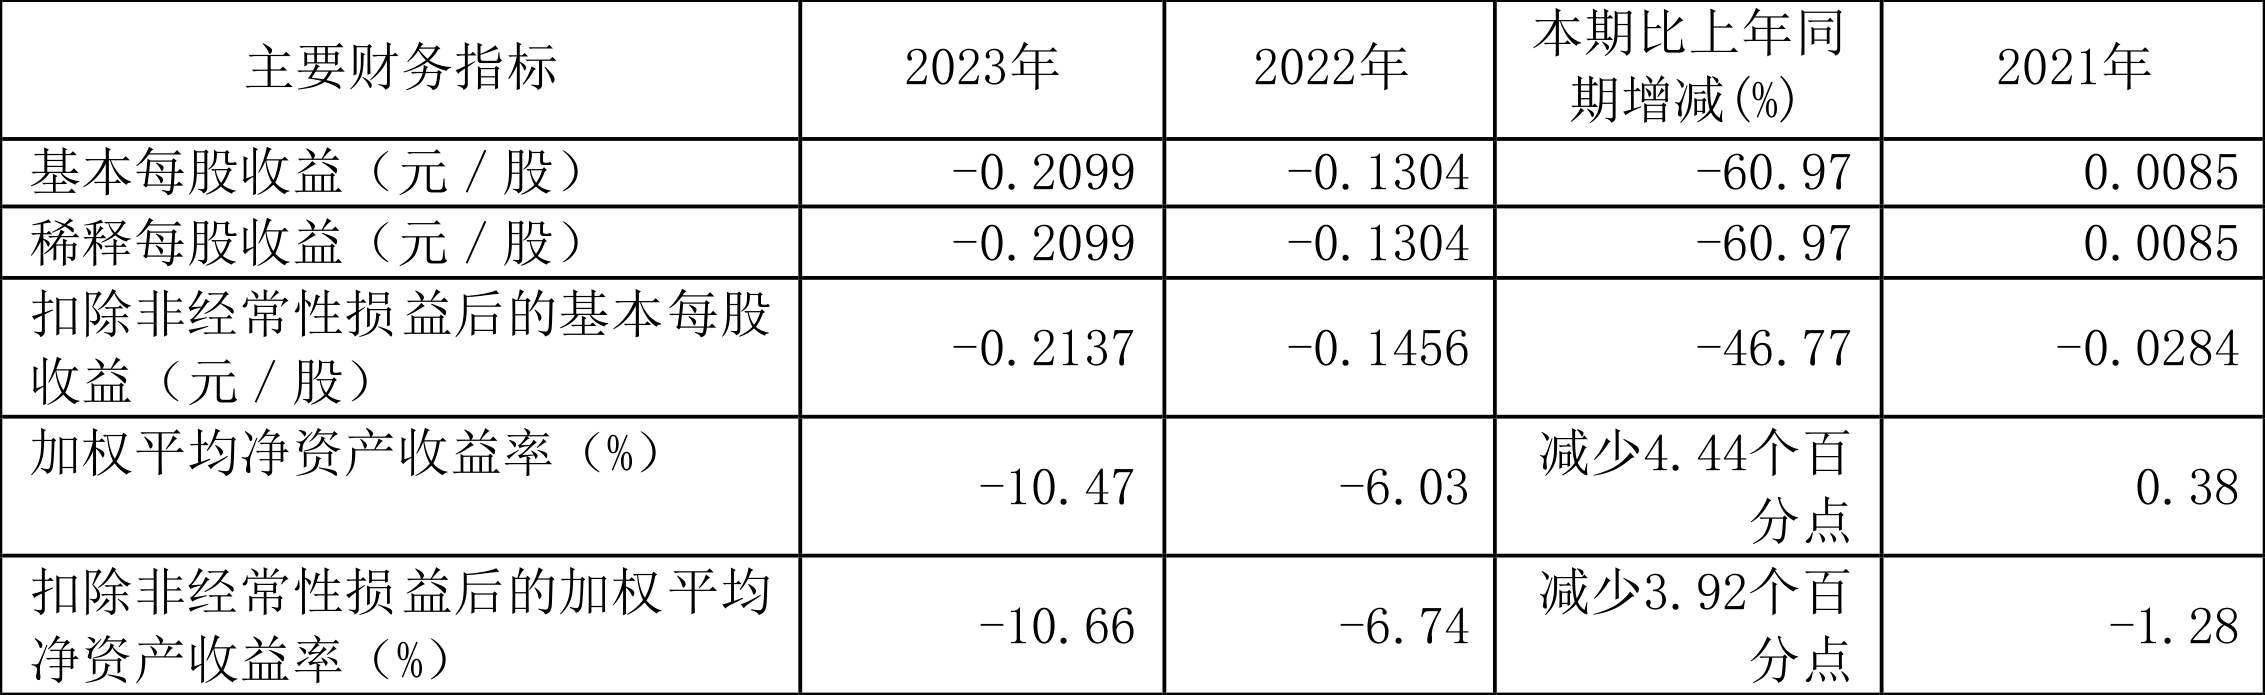 吉视传媒：2023年营收同比降11.77% 亏损6.93亿元